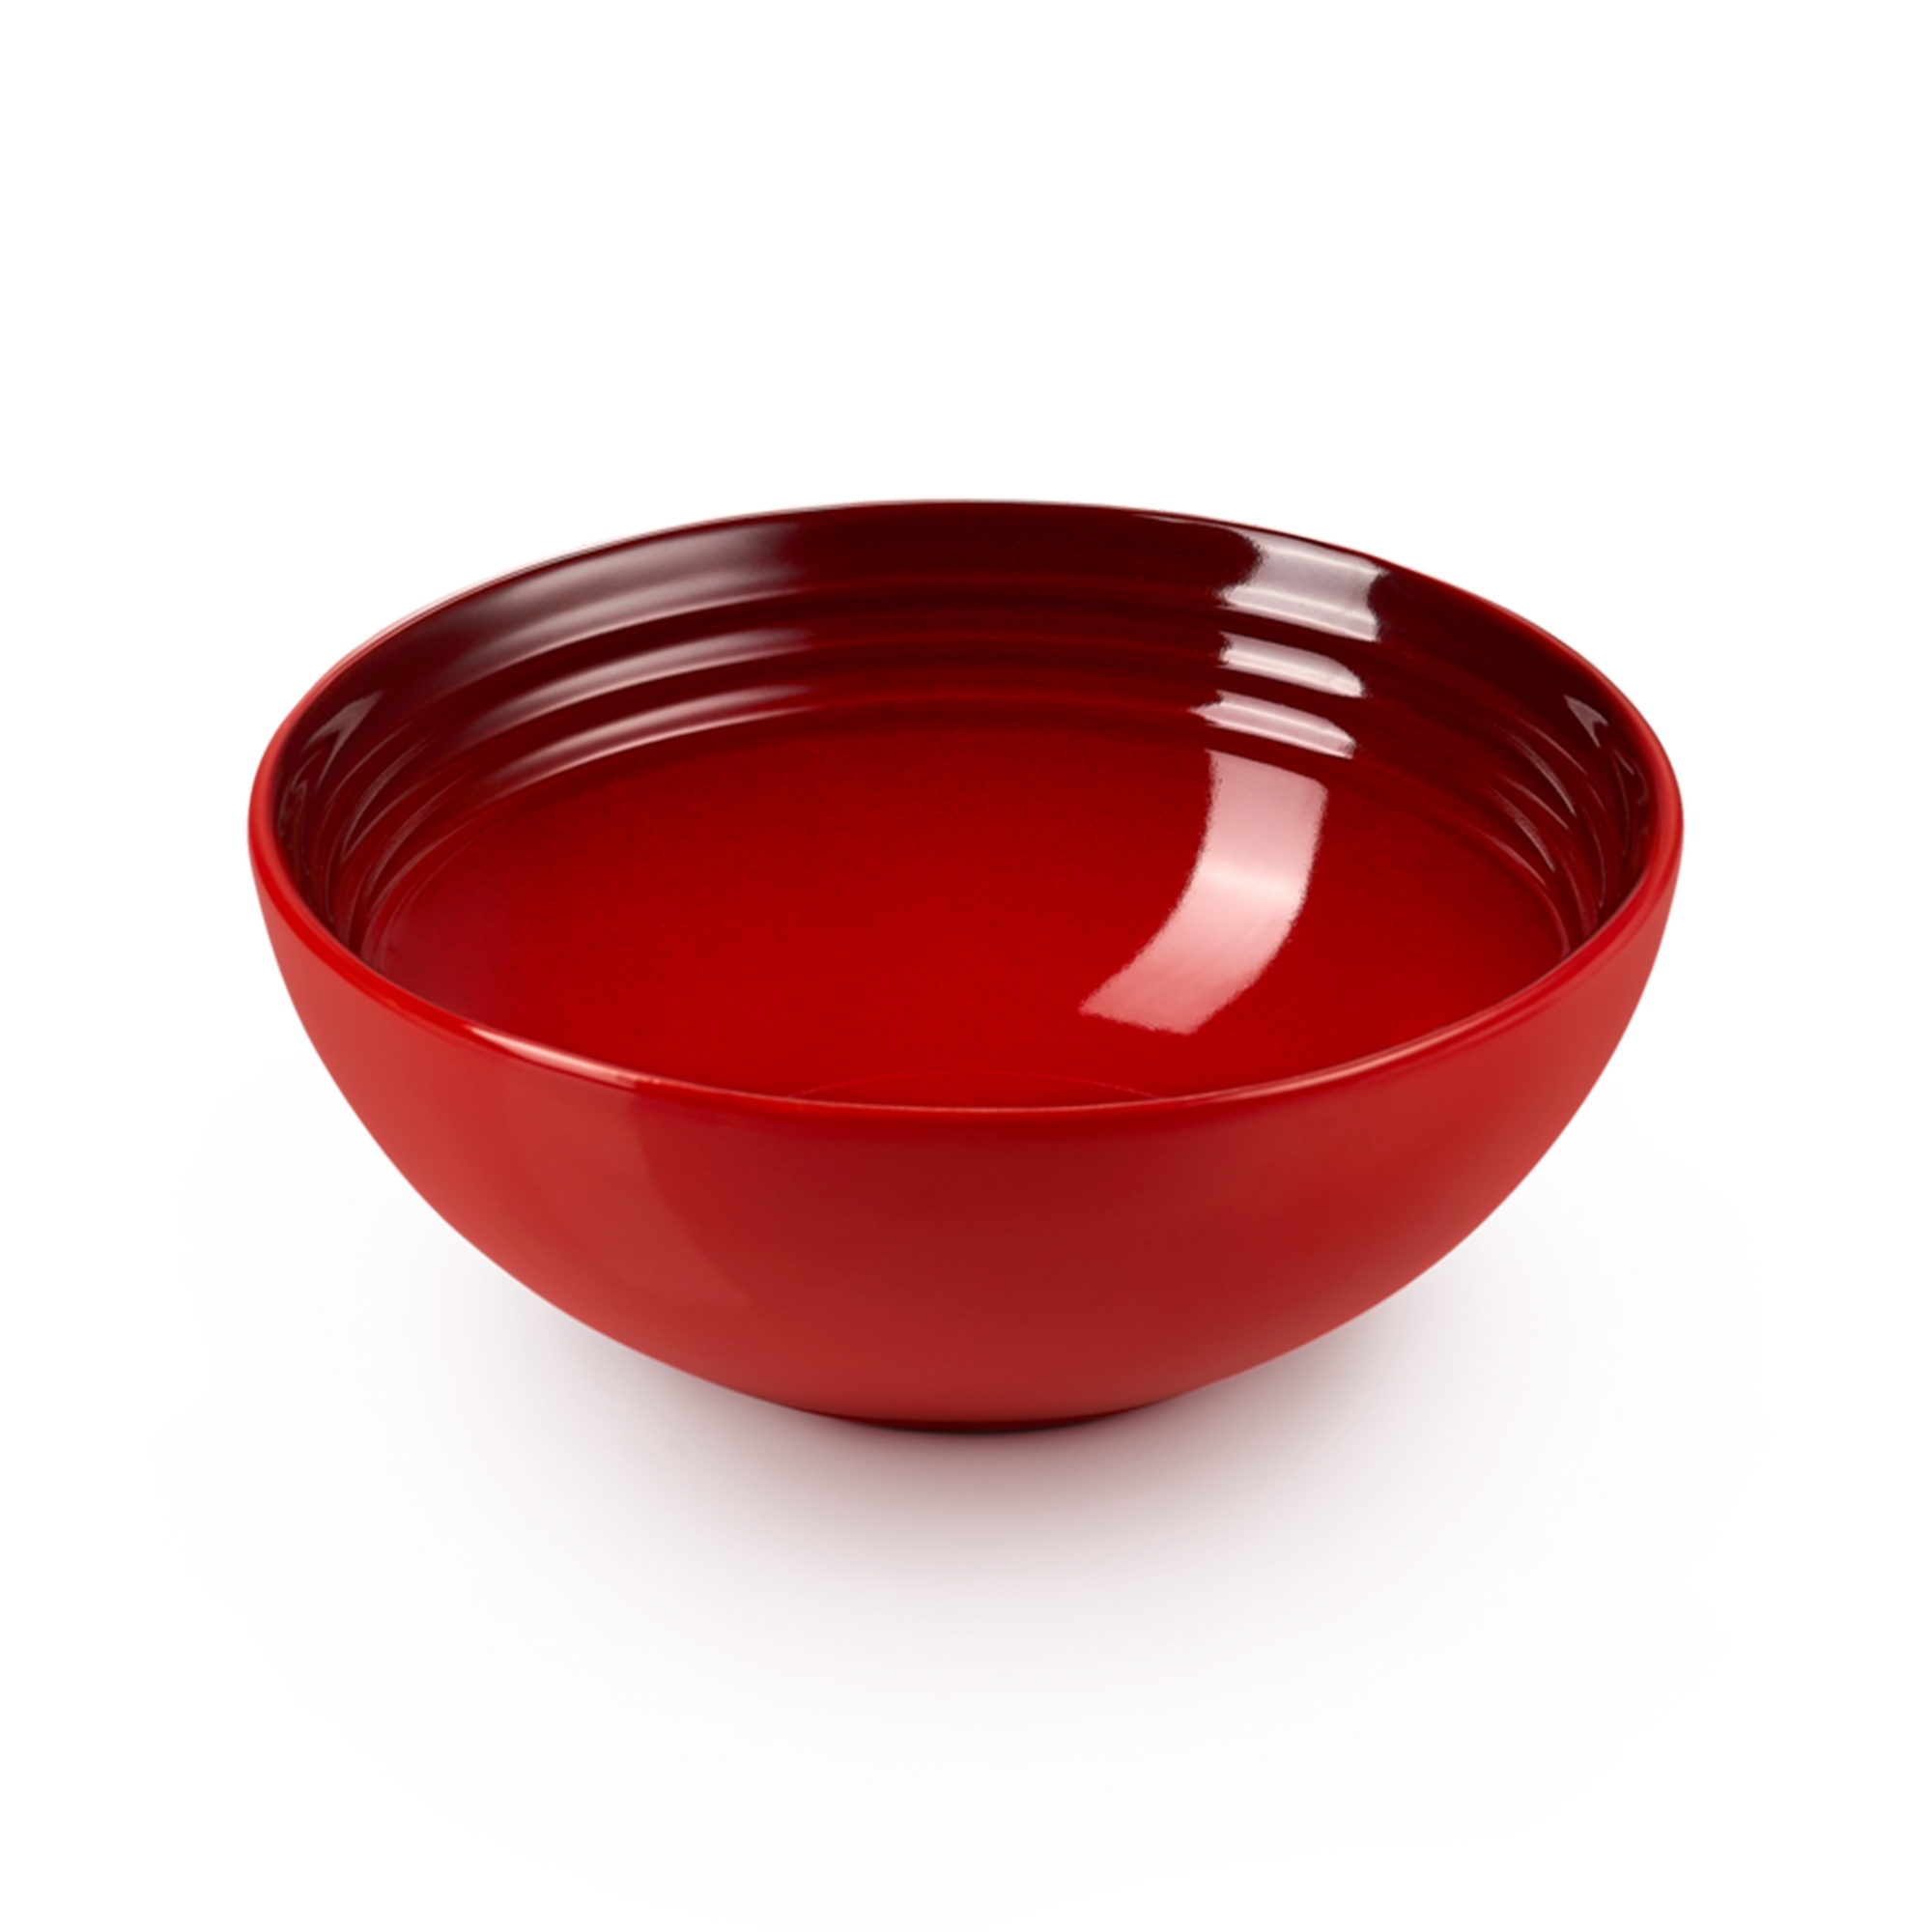 Le Creuset - Cereal Bowl 16 cm - Cerise